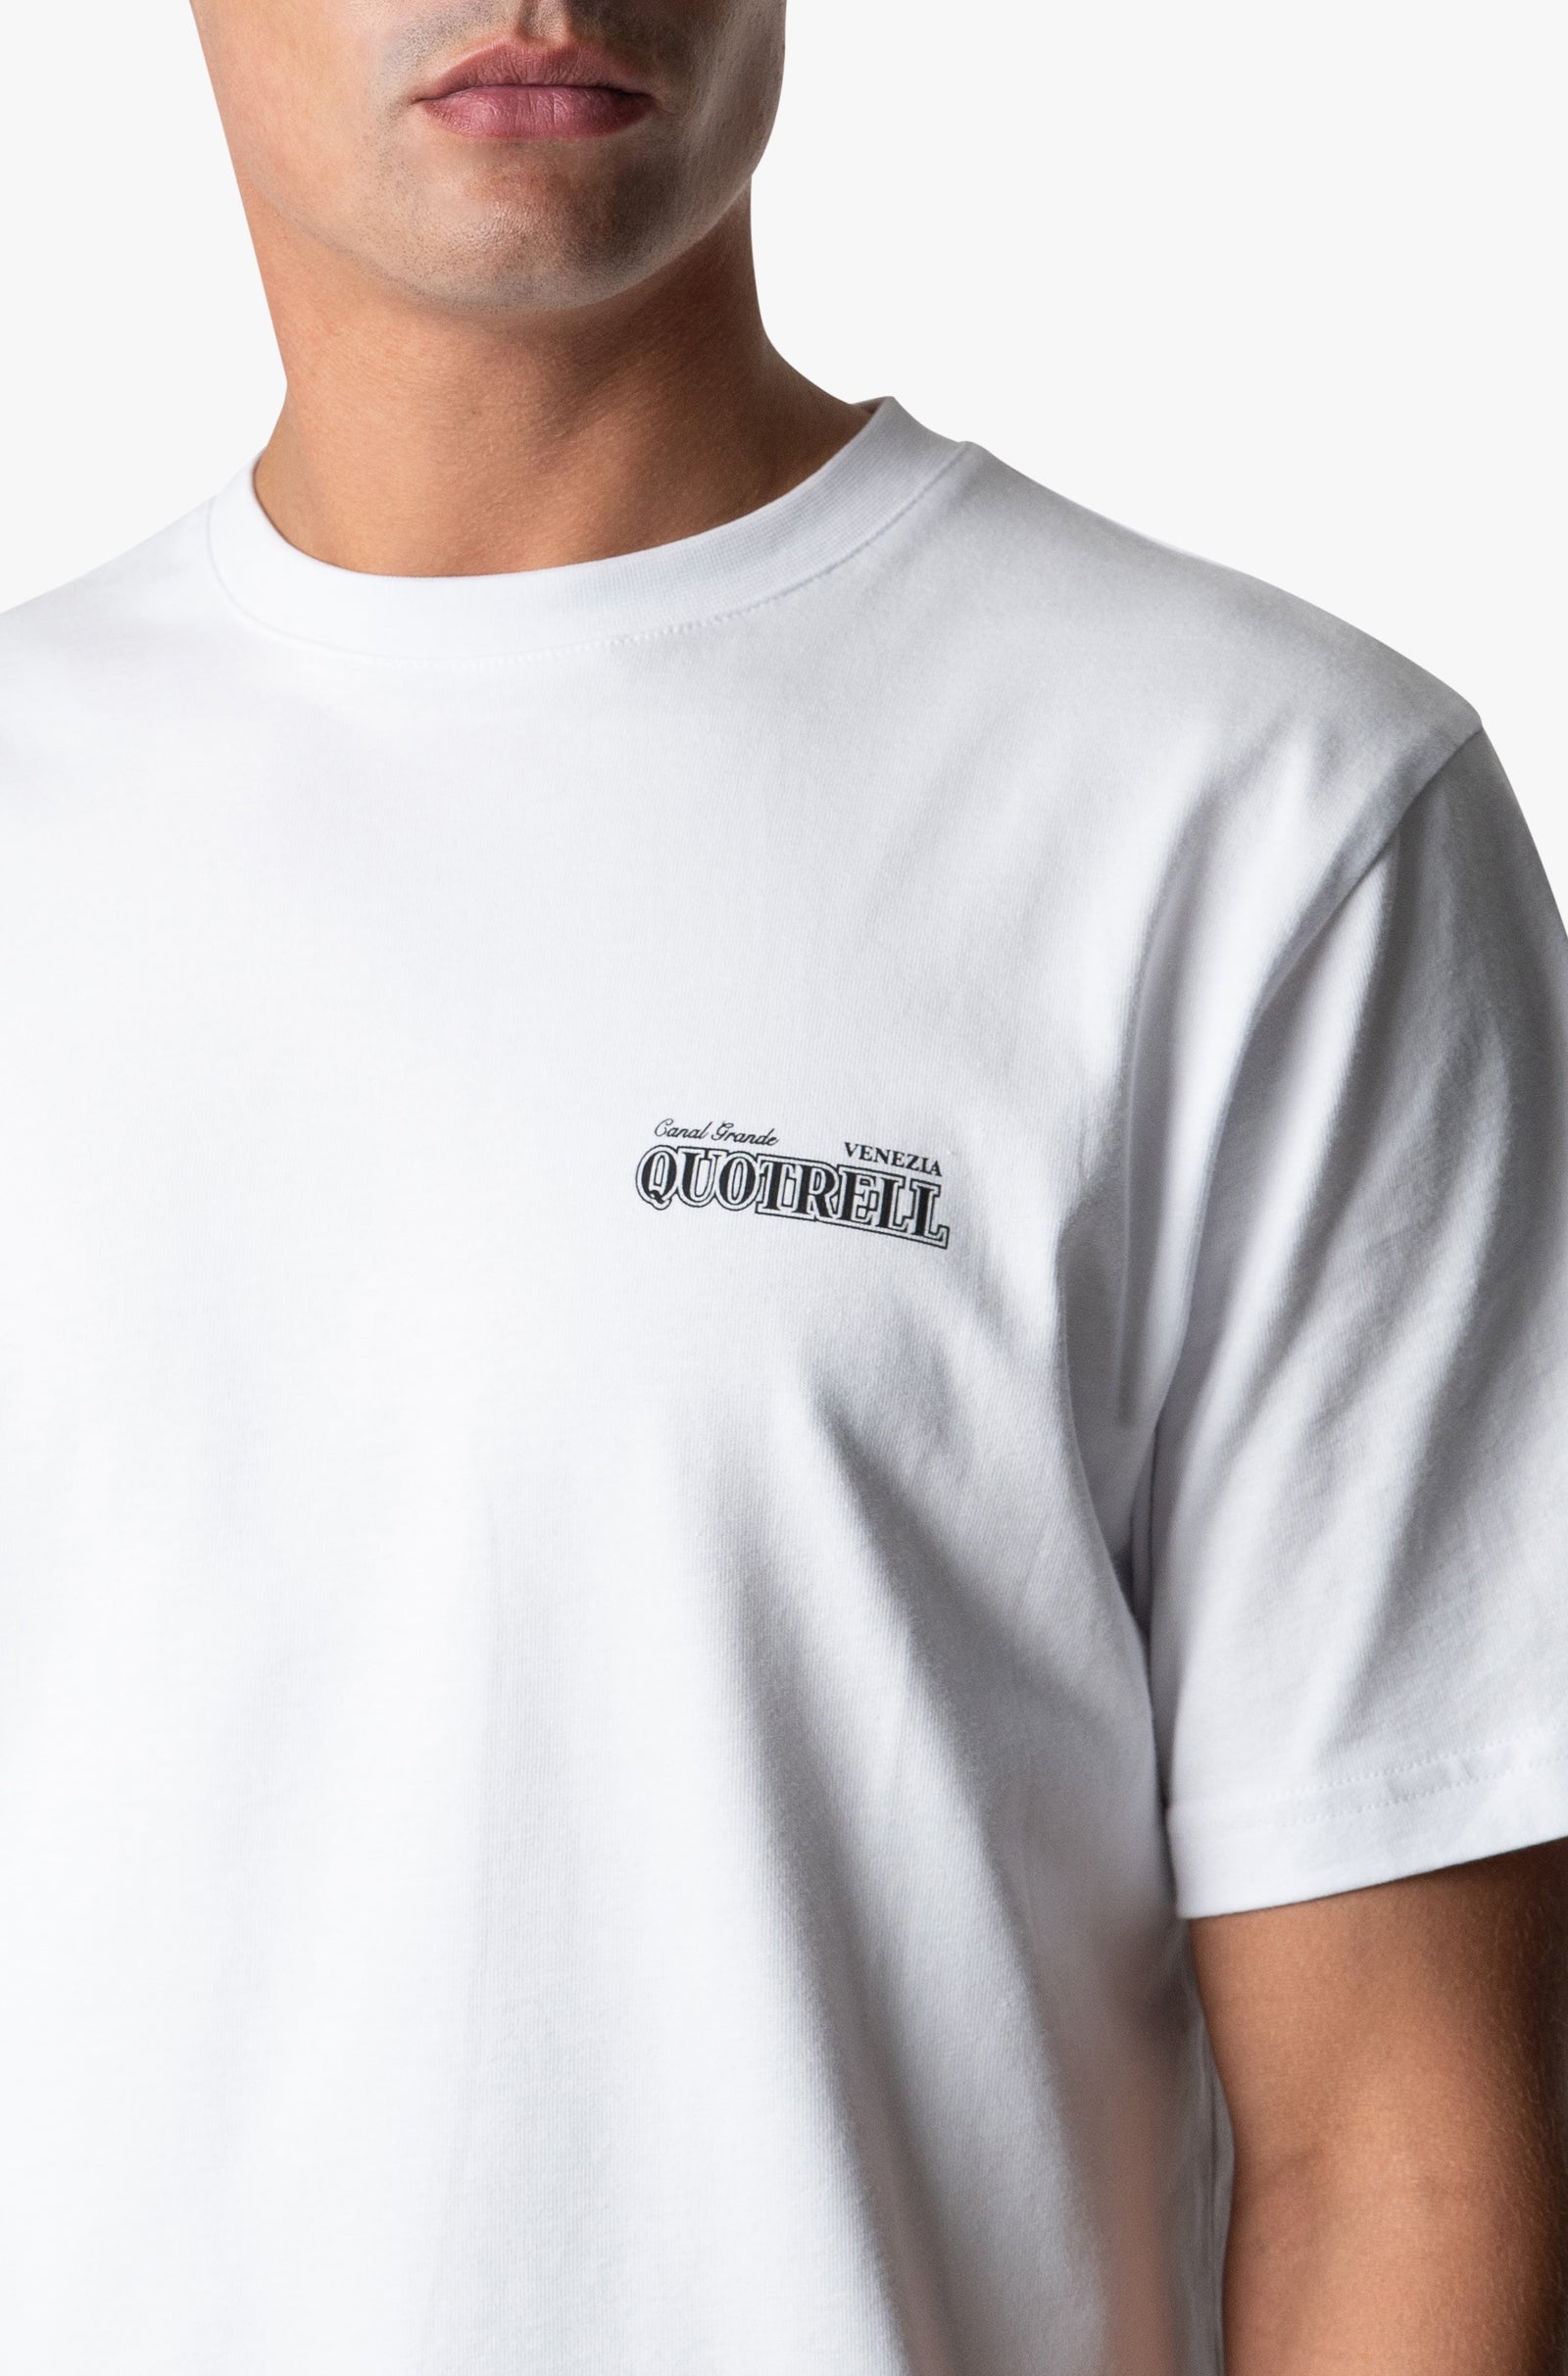 Quotrell Venezia T-shirt